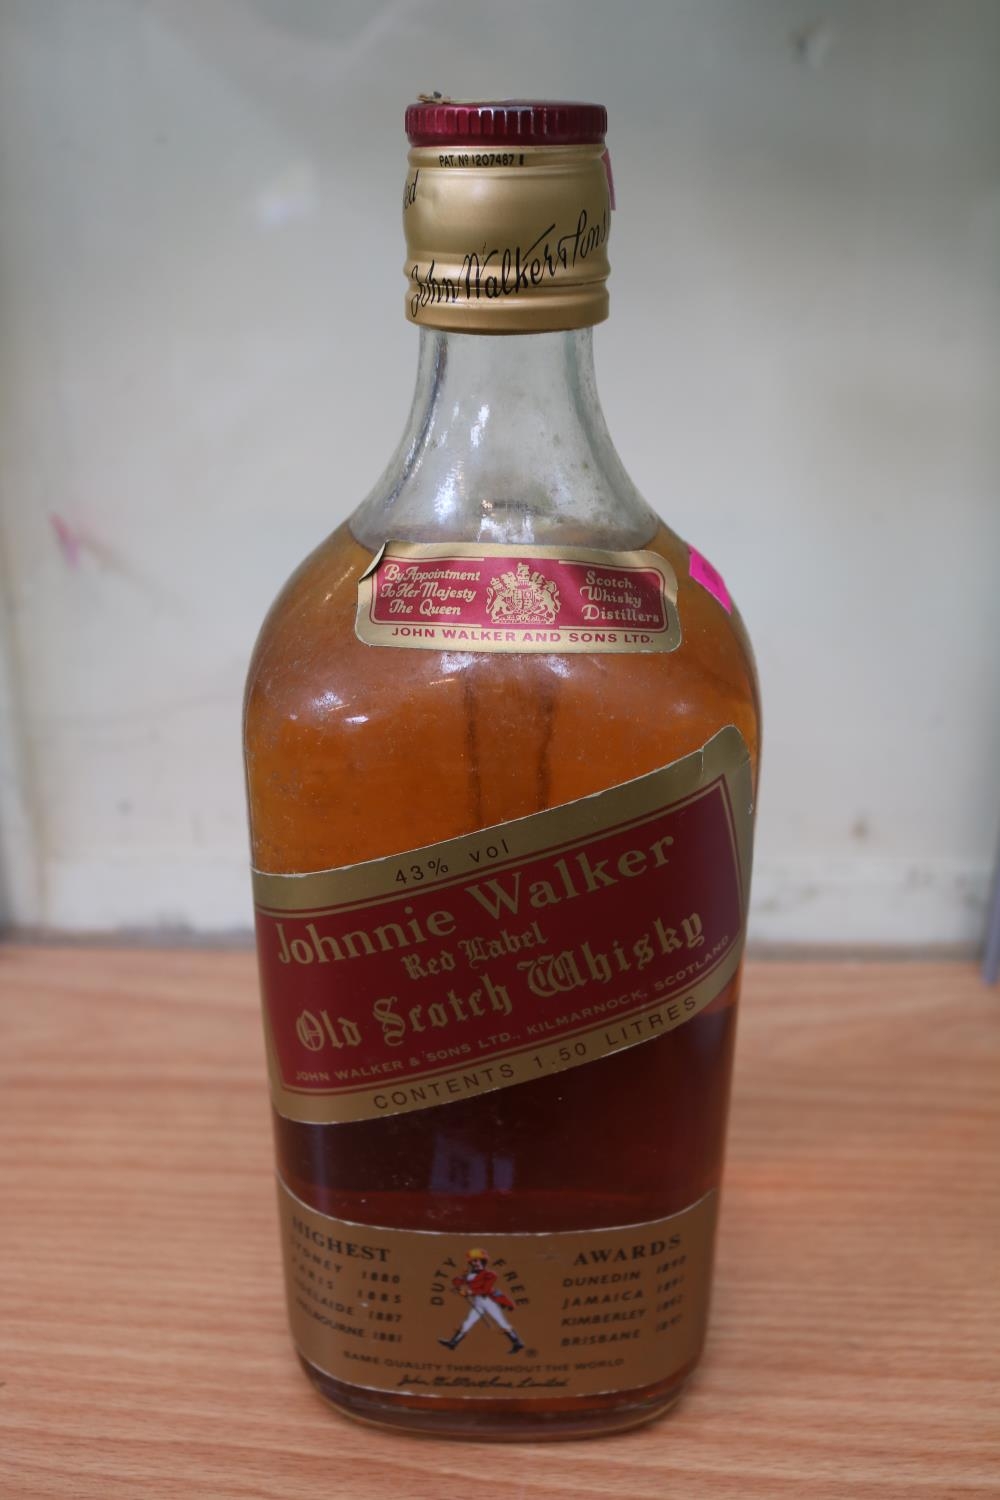 Vintage Johnnie Walker Red Label Old Scotch Whisky 1.5L